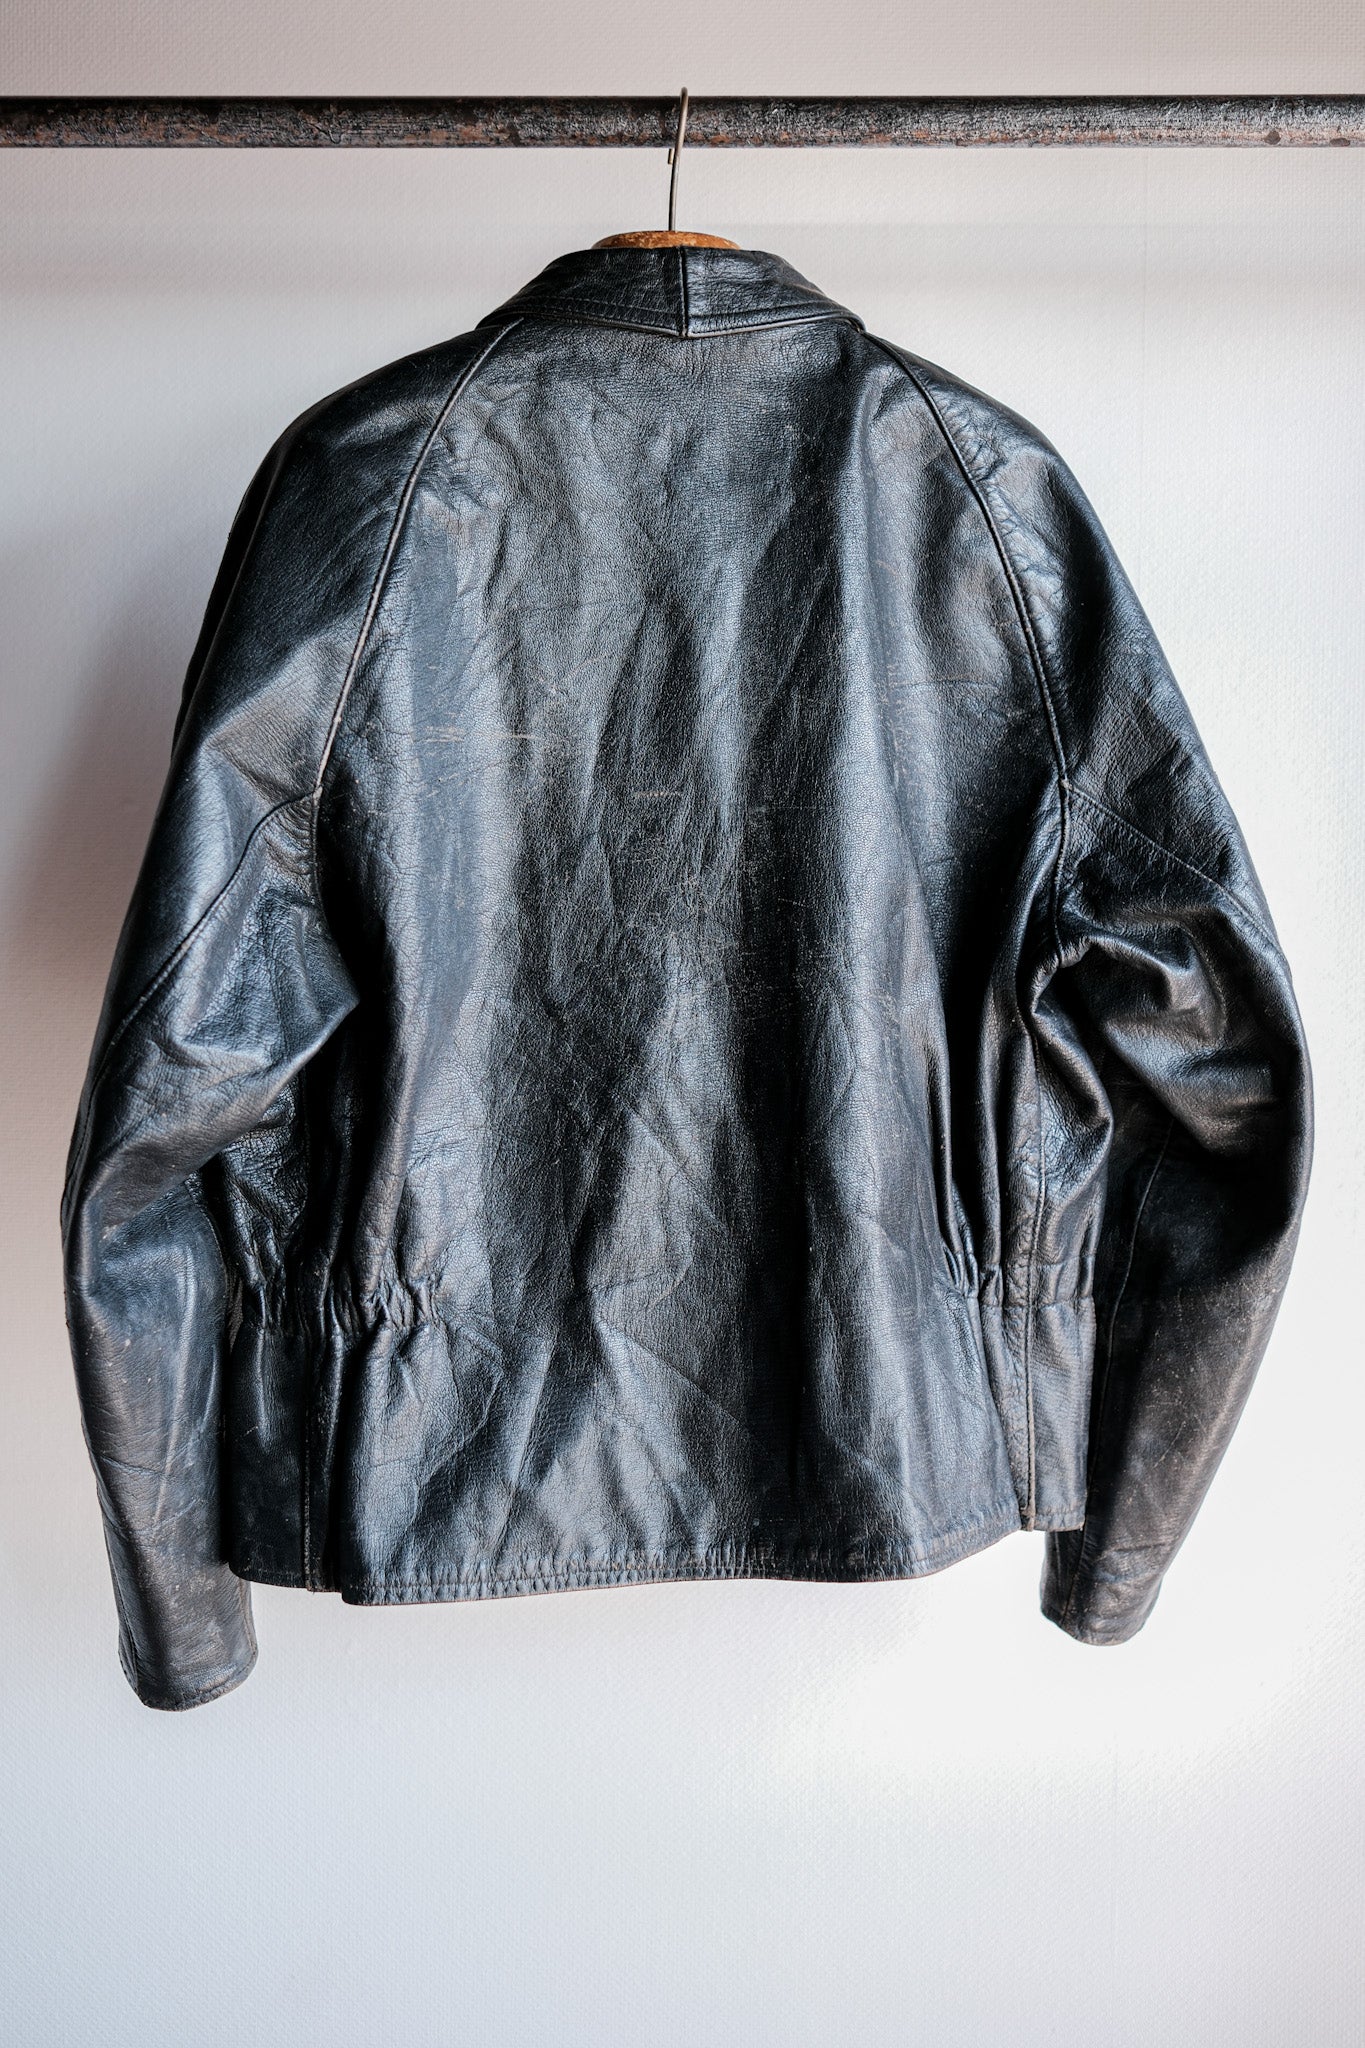 [~ 60 년대] 이탈리아 육군 오토바이 가죽 재킷 "민간인 유형"